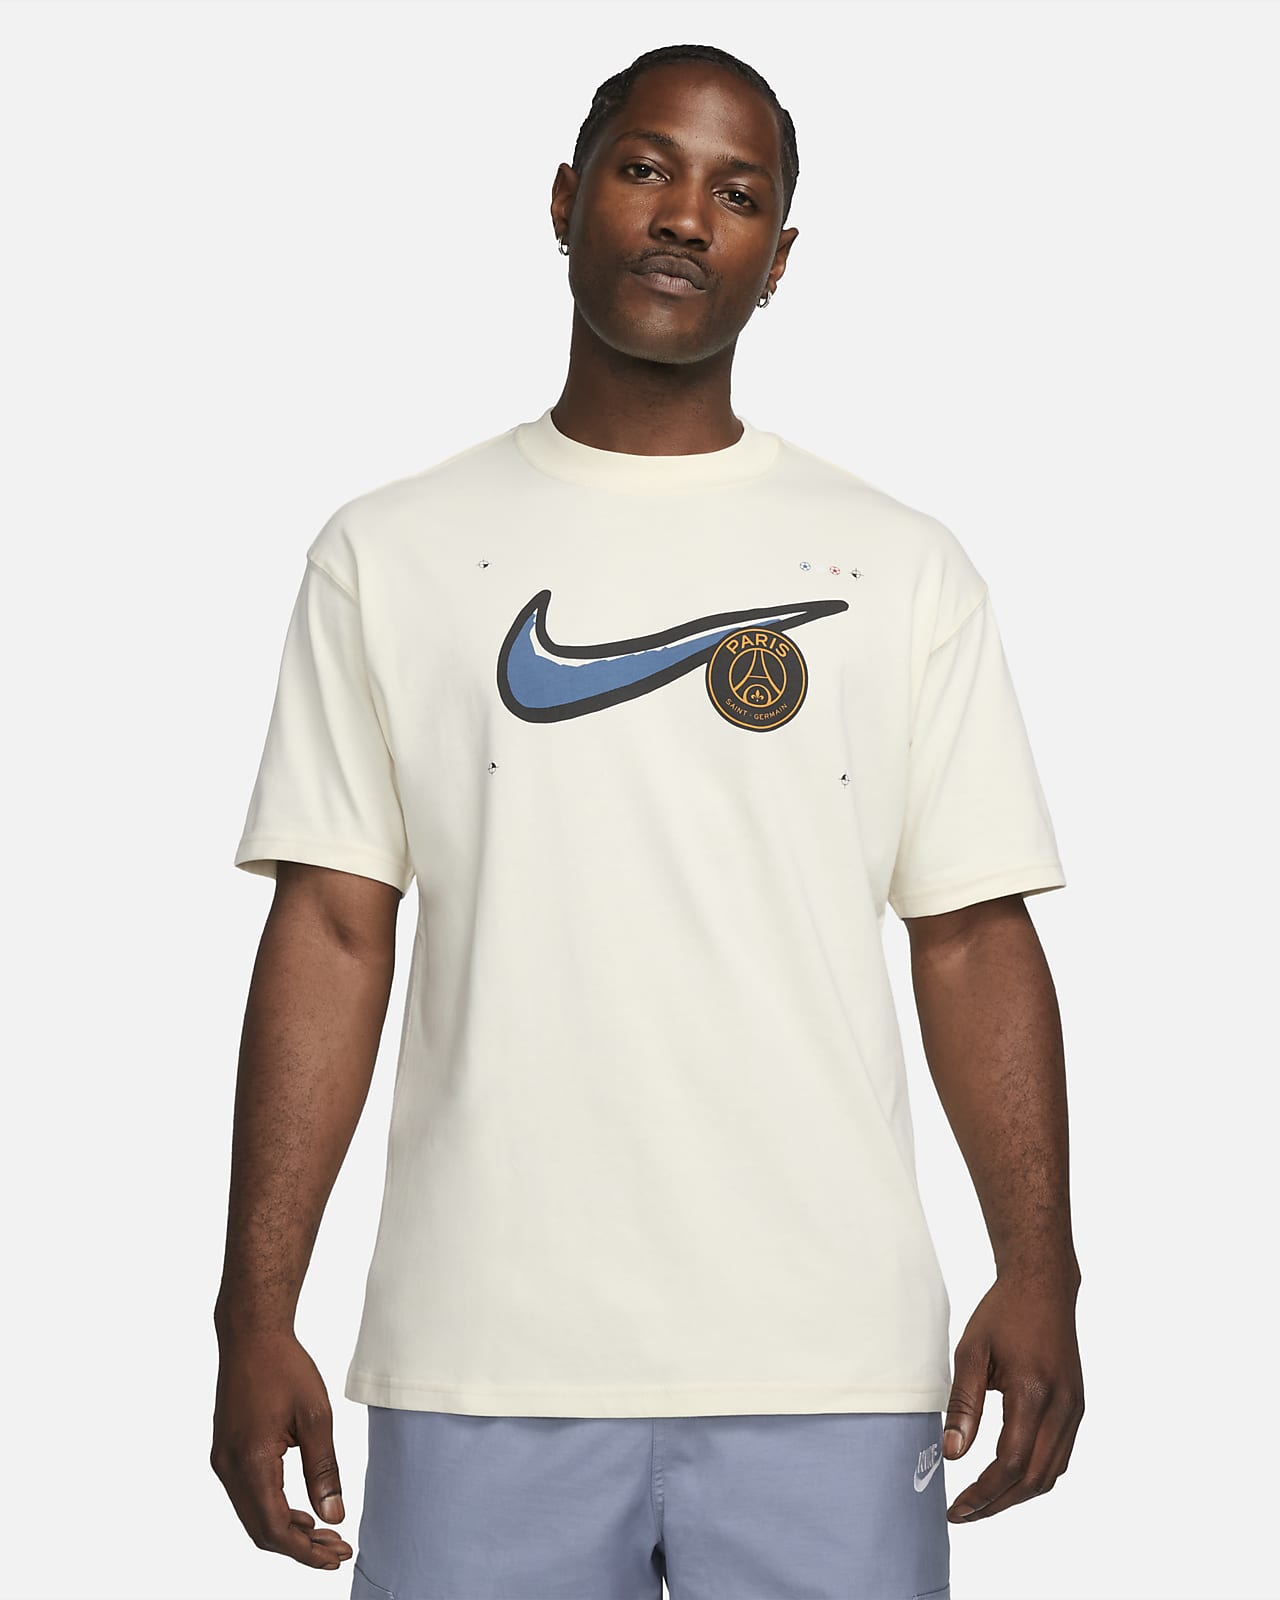 NIKE公式】PSG マックス90 メンズ ナイキ サッカー Tシャツ.オンラインストア (通販サイト)